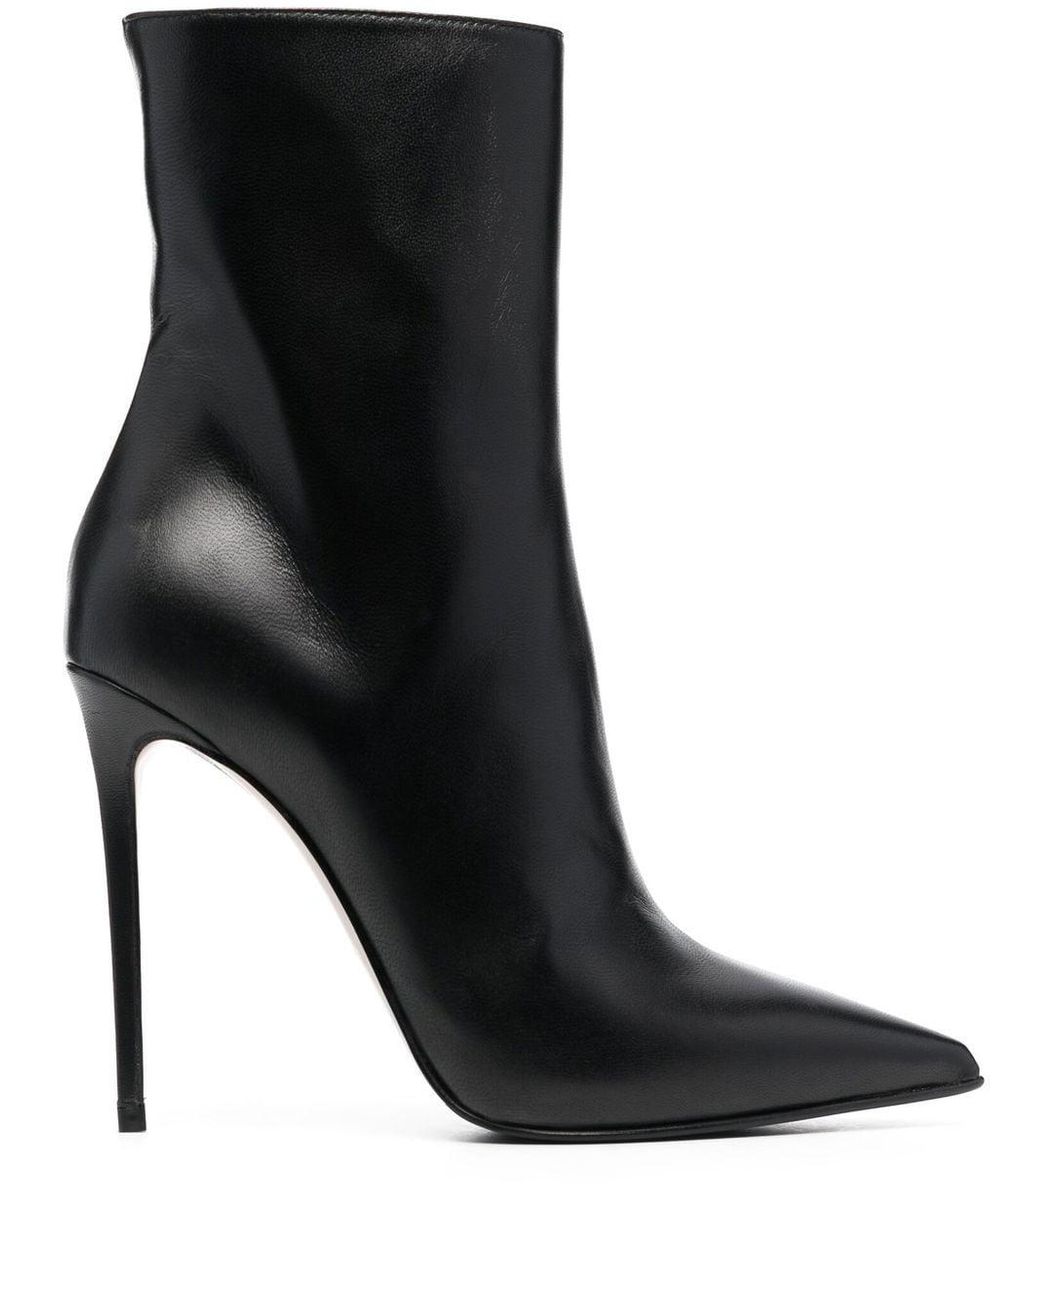 Boots Rene Caovilla en coloris Noir Femme Chaussures Bottes Bottes hauteur mi-mollet 